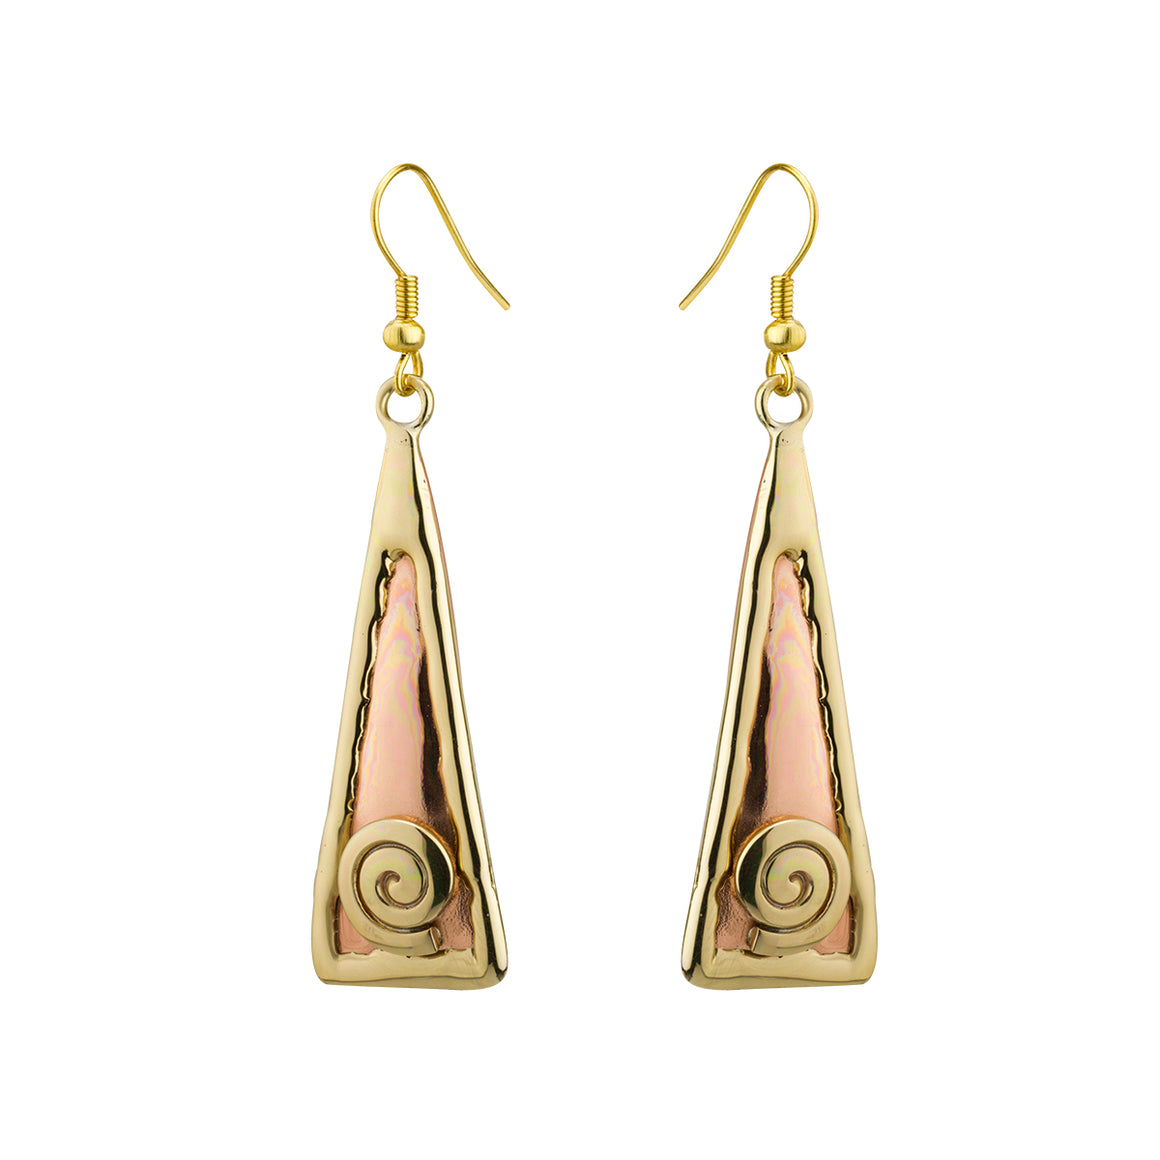 Two Toned Copper Spiral Drop Earrings by Grange Celtic Jewellery.